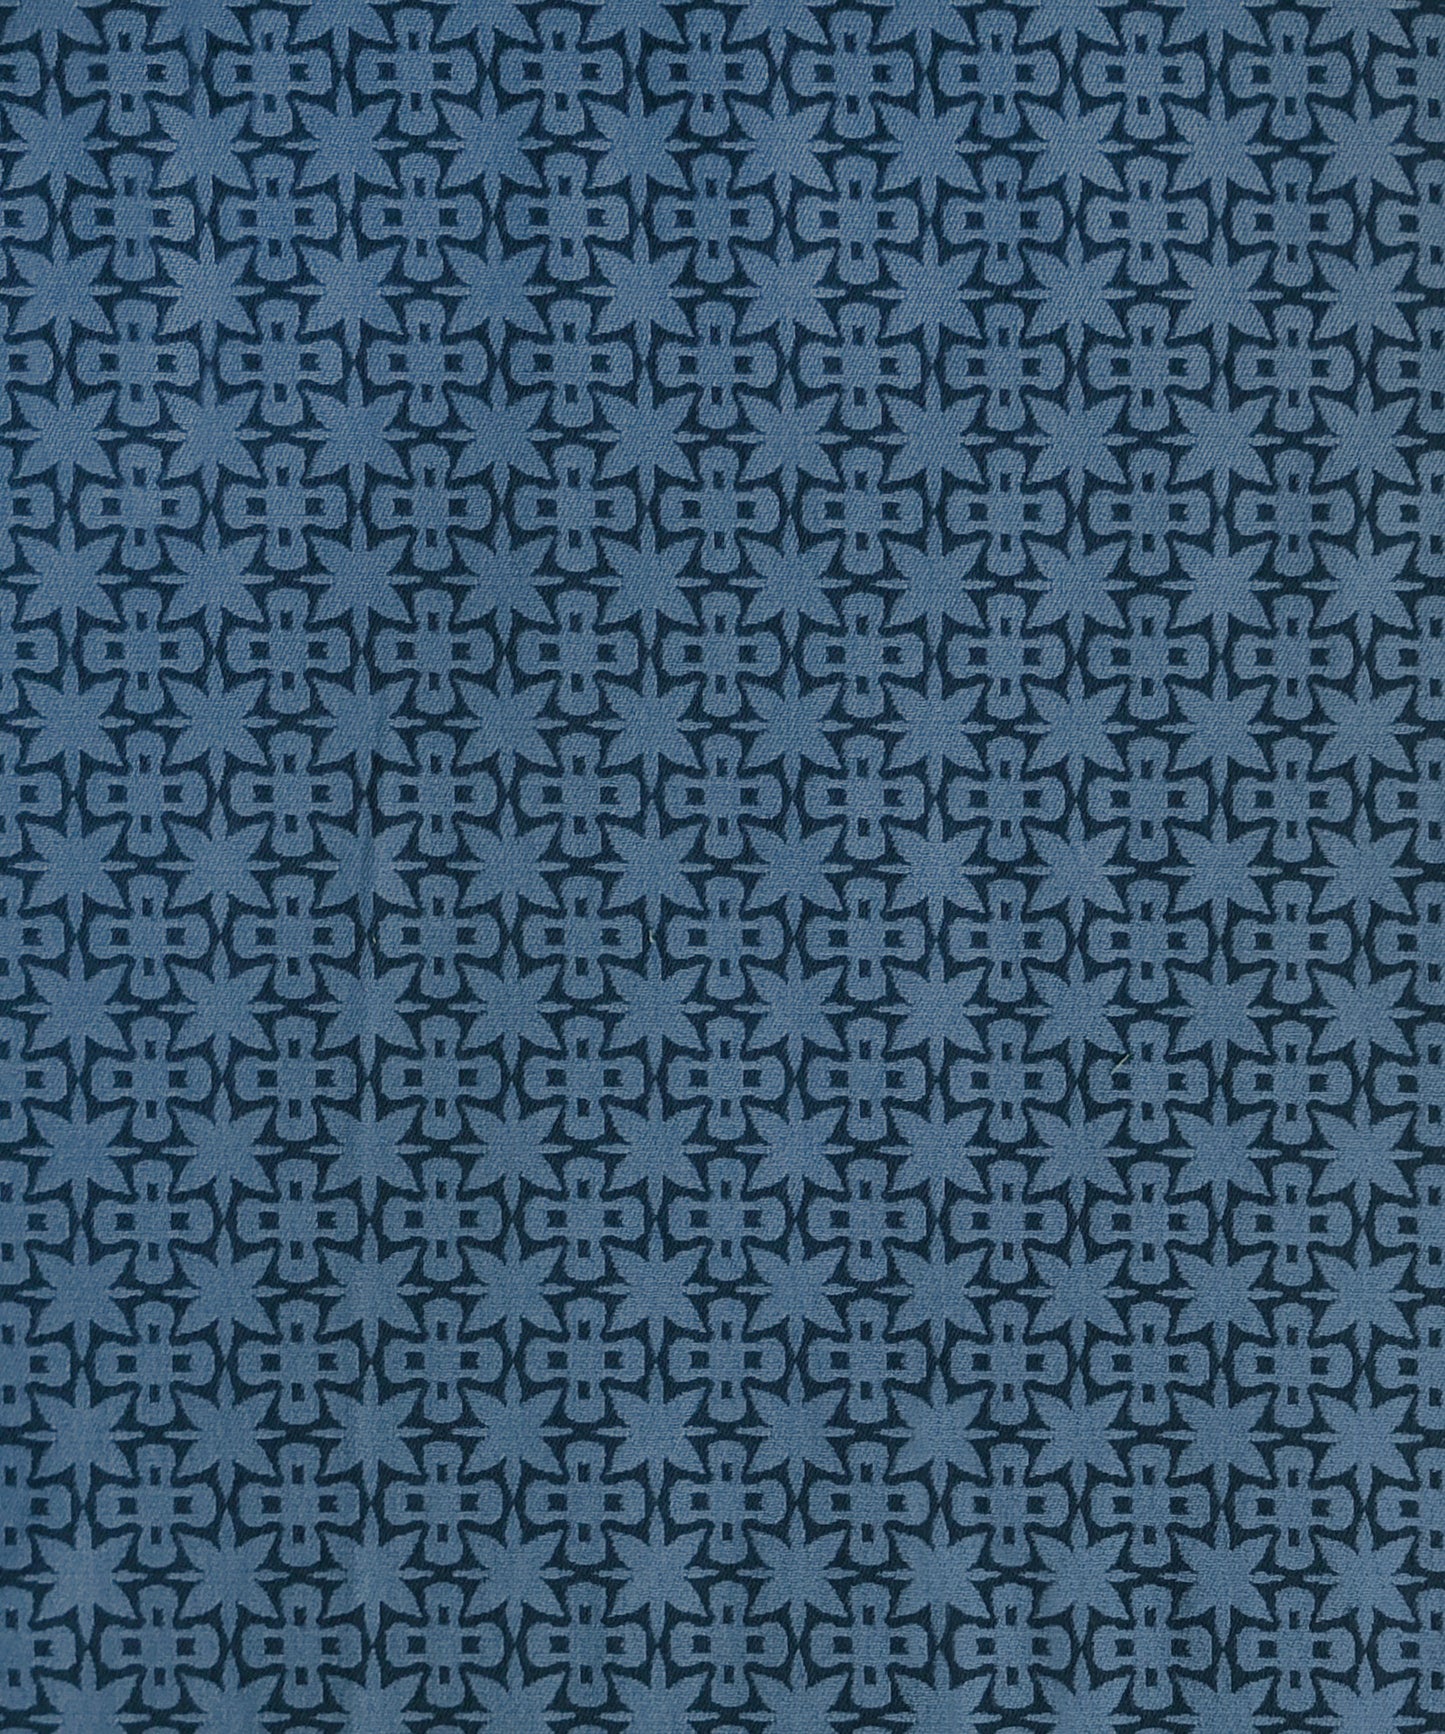 Riad Fabric in color Denim